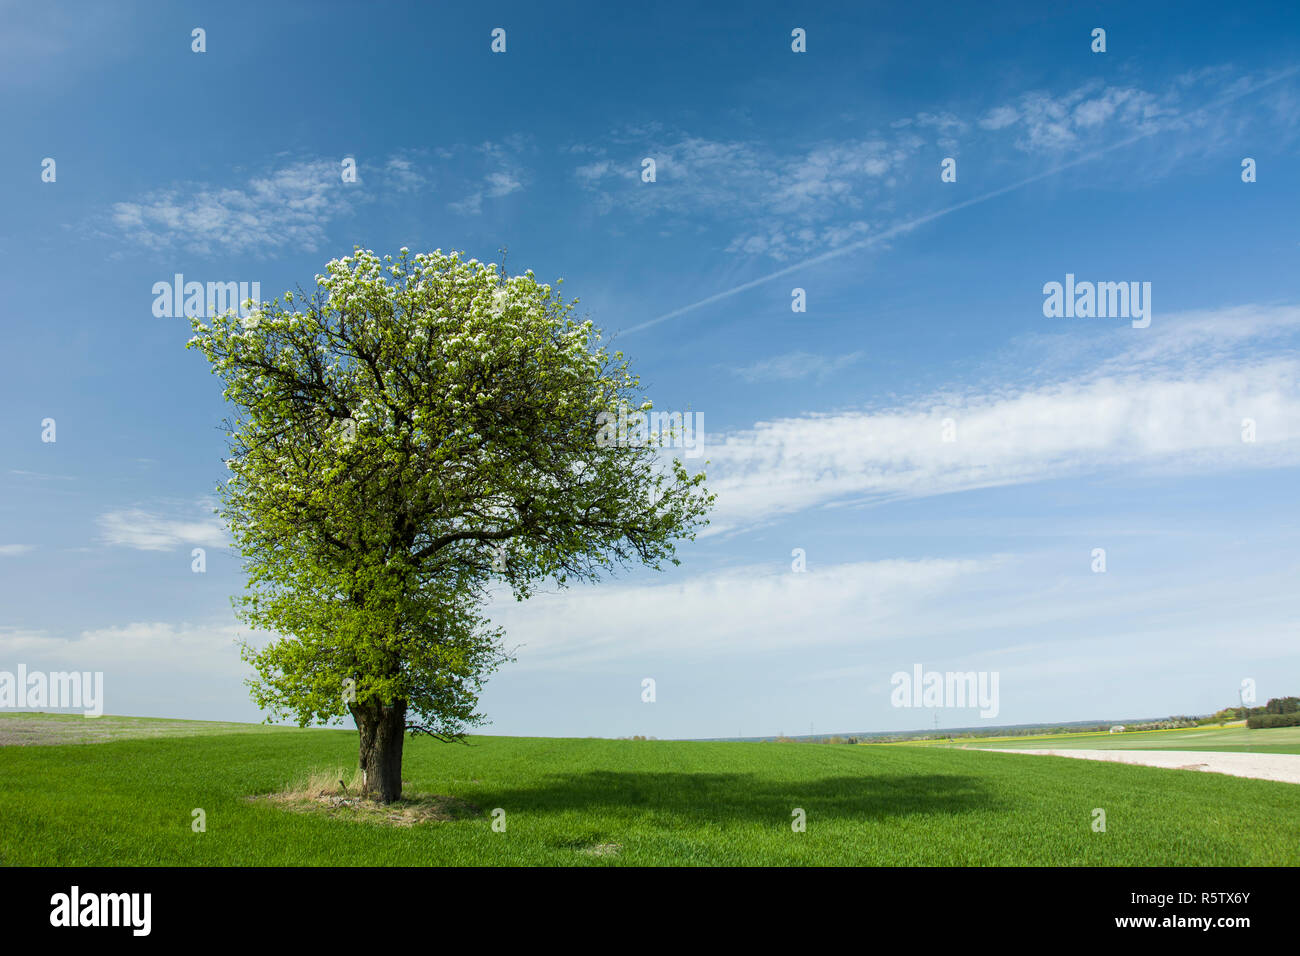 Grand arbre à feuilles caduques florissant dans un champ vert, d'horizon et les nuages sur ciel bleu Banque D'Images